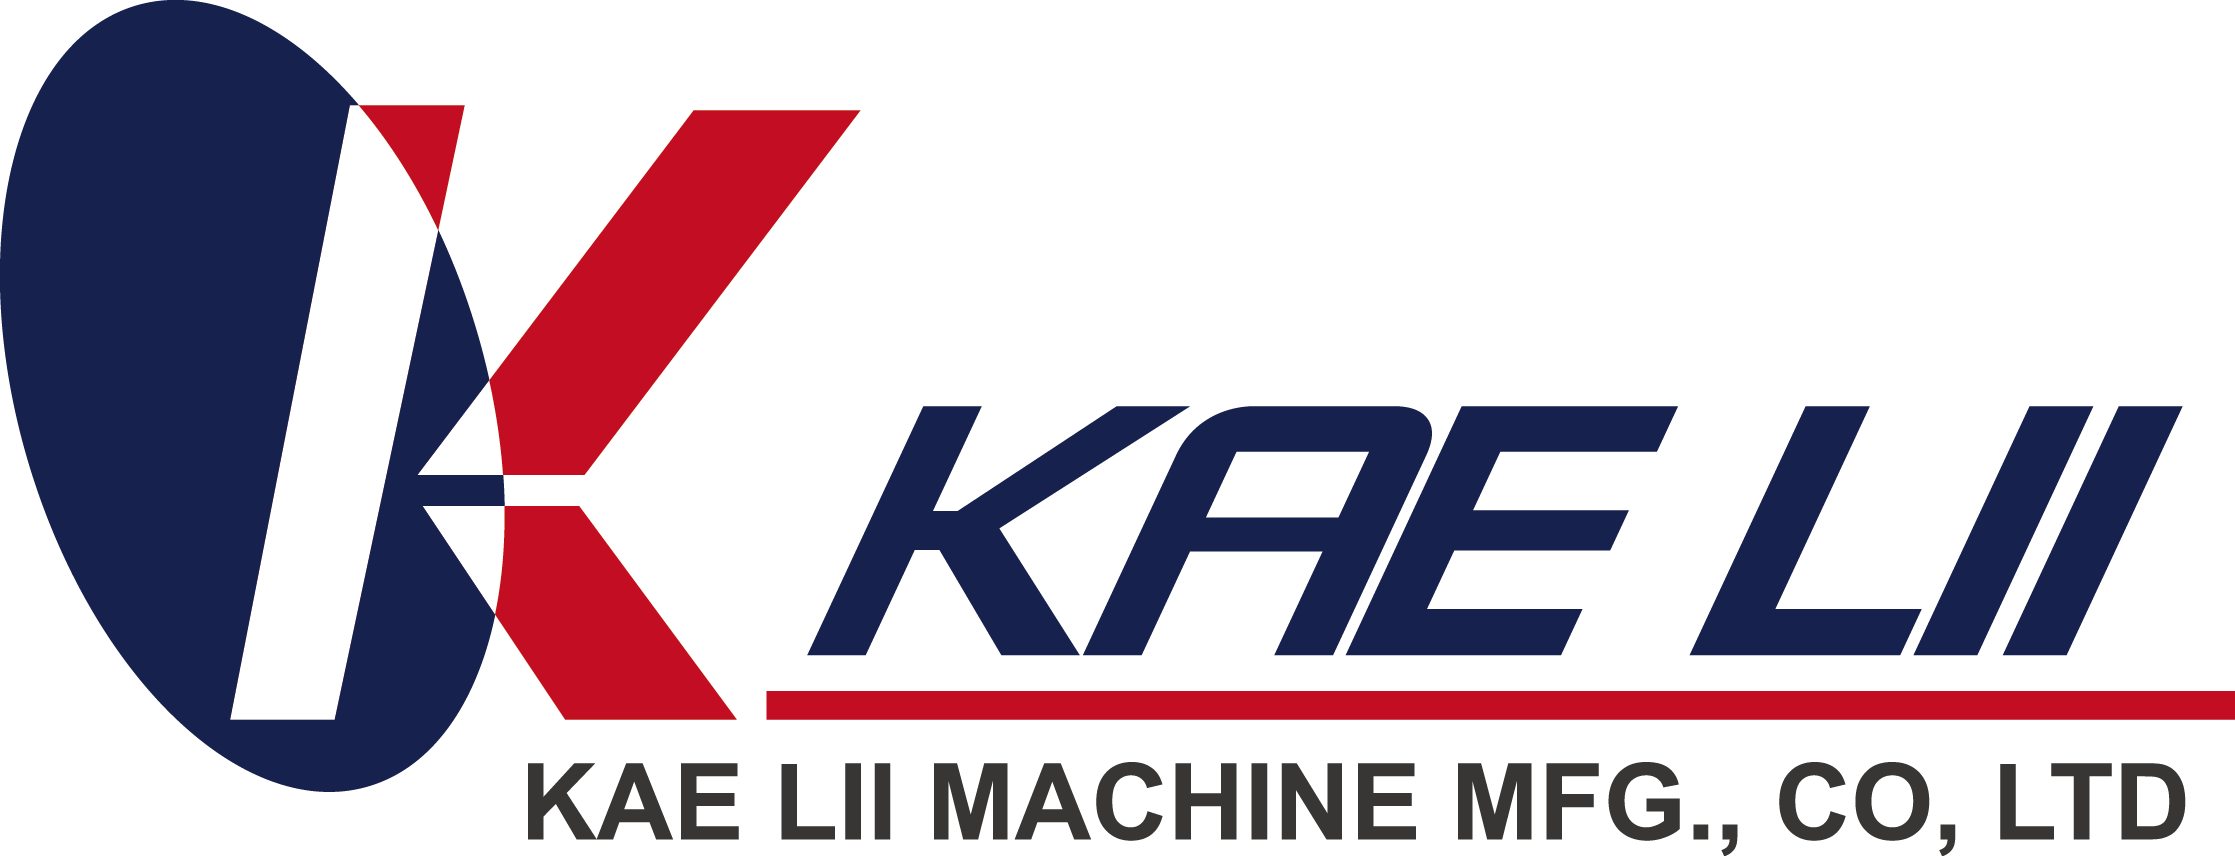 Kae Lii Machine MFG Co., Ltd.